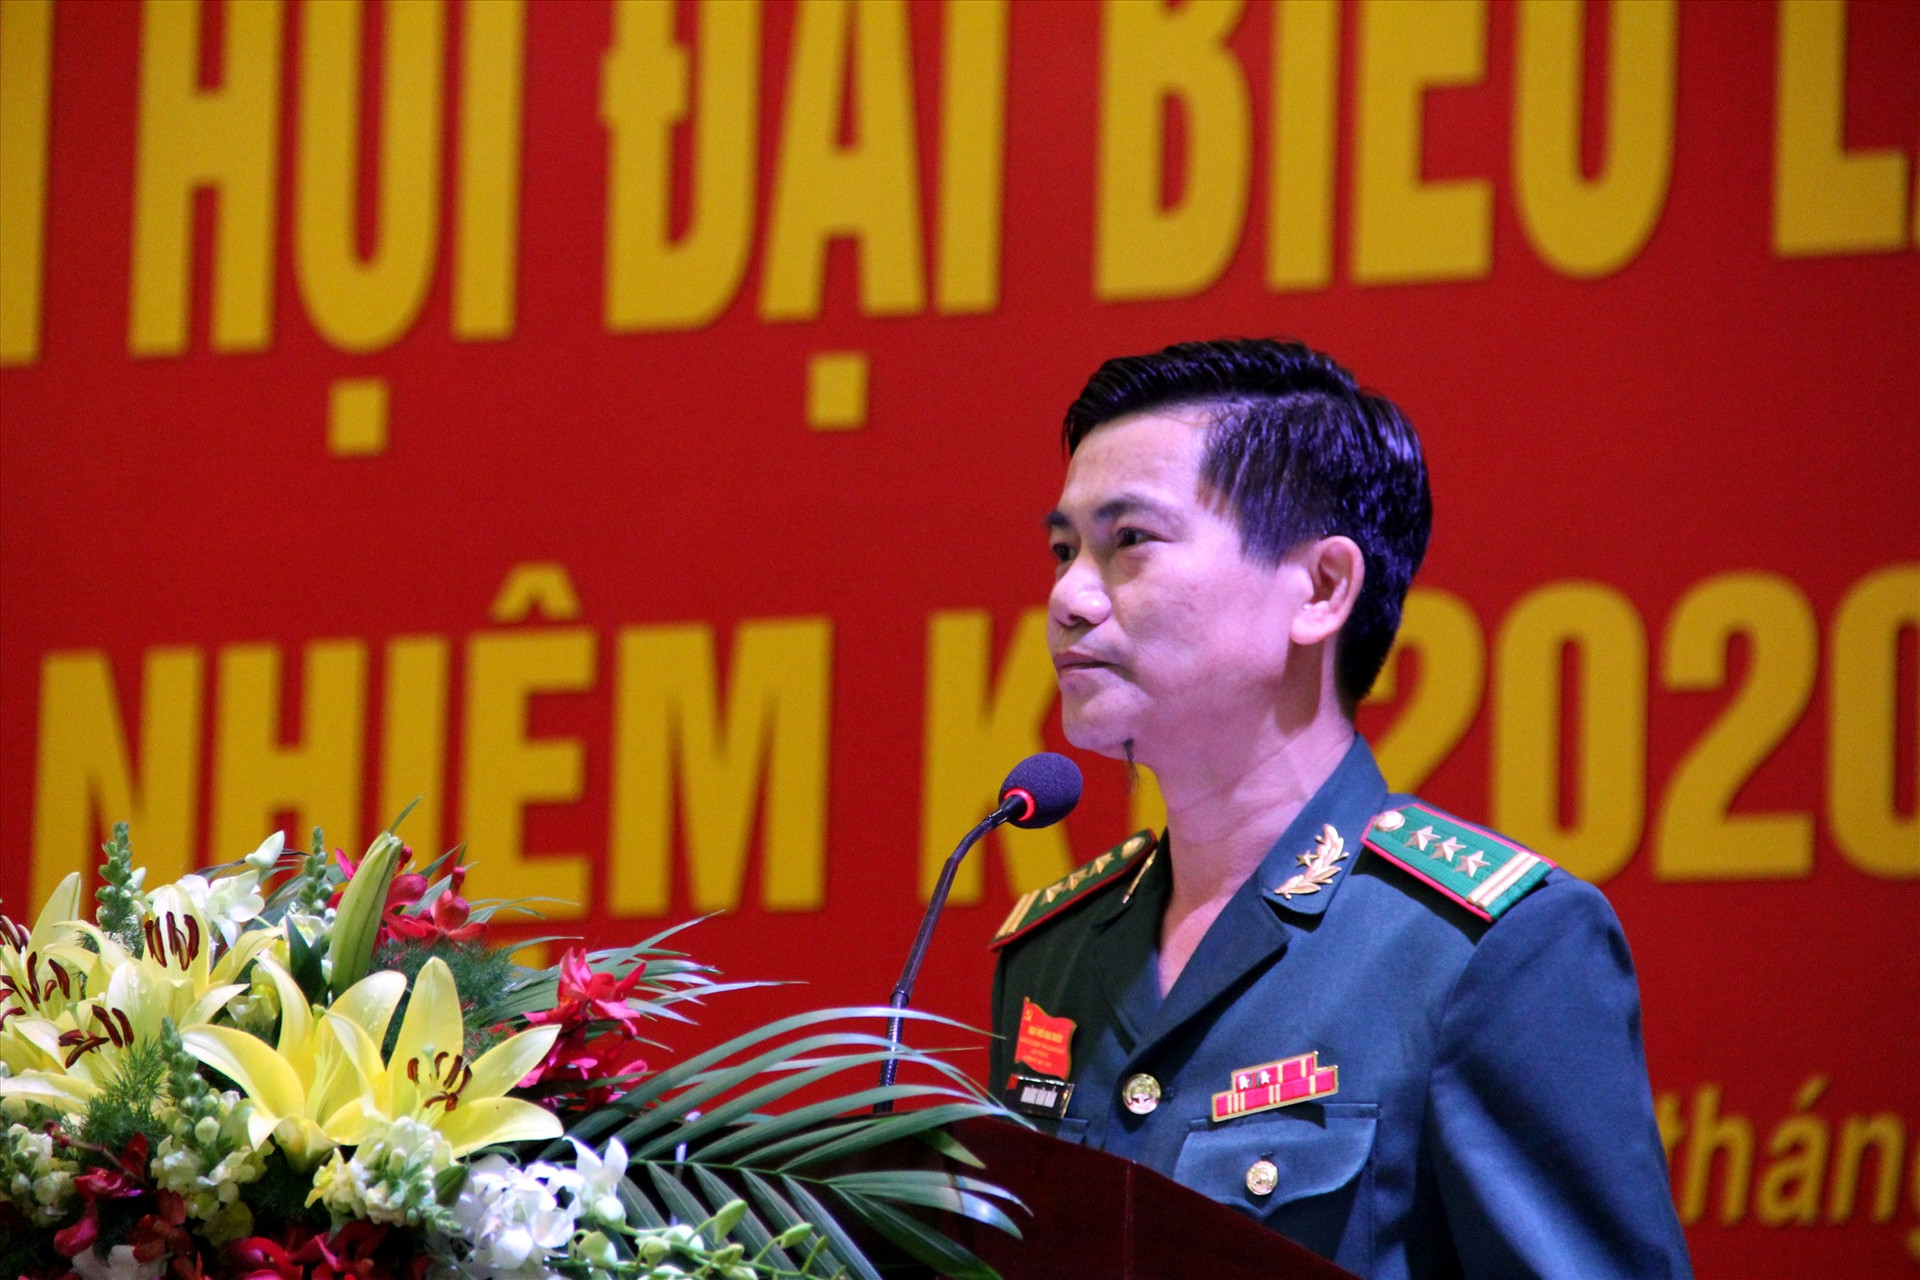 Thượng tá Hoàng Văn Mẫn - Chính ủy BĐBP tỉnh tái đắc cử chức danh Bí thư Đảng ủy BĐBP tỉnh nhiệm kỳ 2020 - 2025. Ảnh: A.N